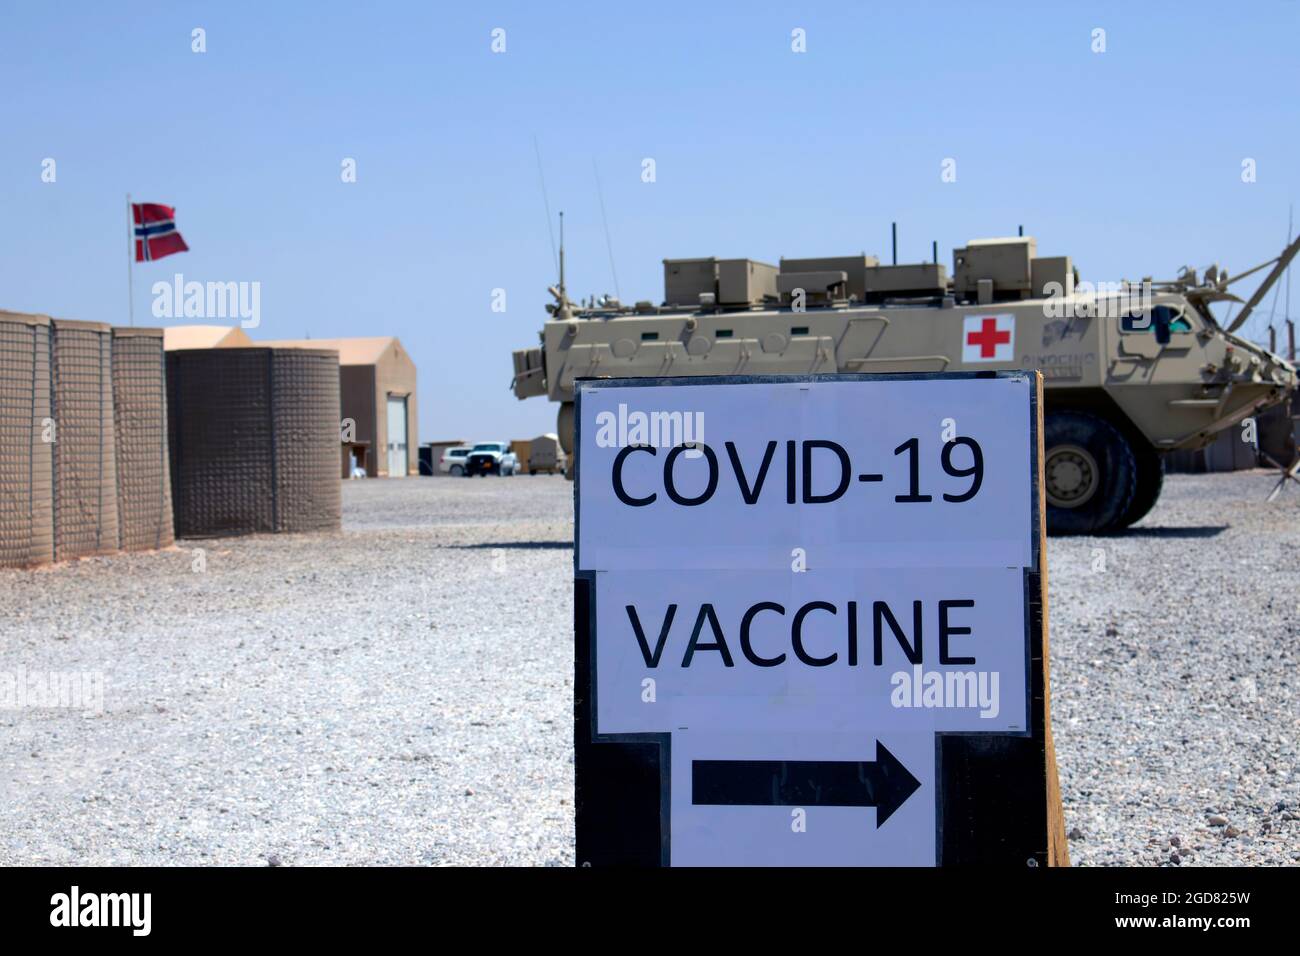 Los médicos de la Fuerza de Tarea Viking administran las vacunas COVID-19 al personal estacionado en la Base Aérea de Al Asad, Irak, el 2 de junio de 2021. Con la ayuda de los médicos del ejército noruego, en una semana se administraron aproximadamente 750 vacunas a los miembros del servicio de los Estados Unidos, las fuerzas de la coalición y los contratistas civiles. (EE.UU Fotos de la Guardia Nacional del Ejército por Sgt. 1st Clase Christie R. Smith) Foto de stock